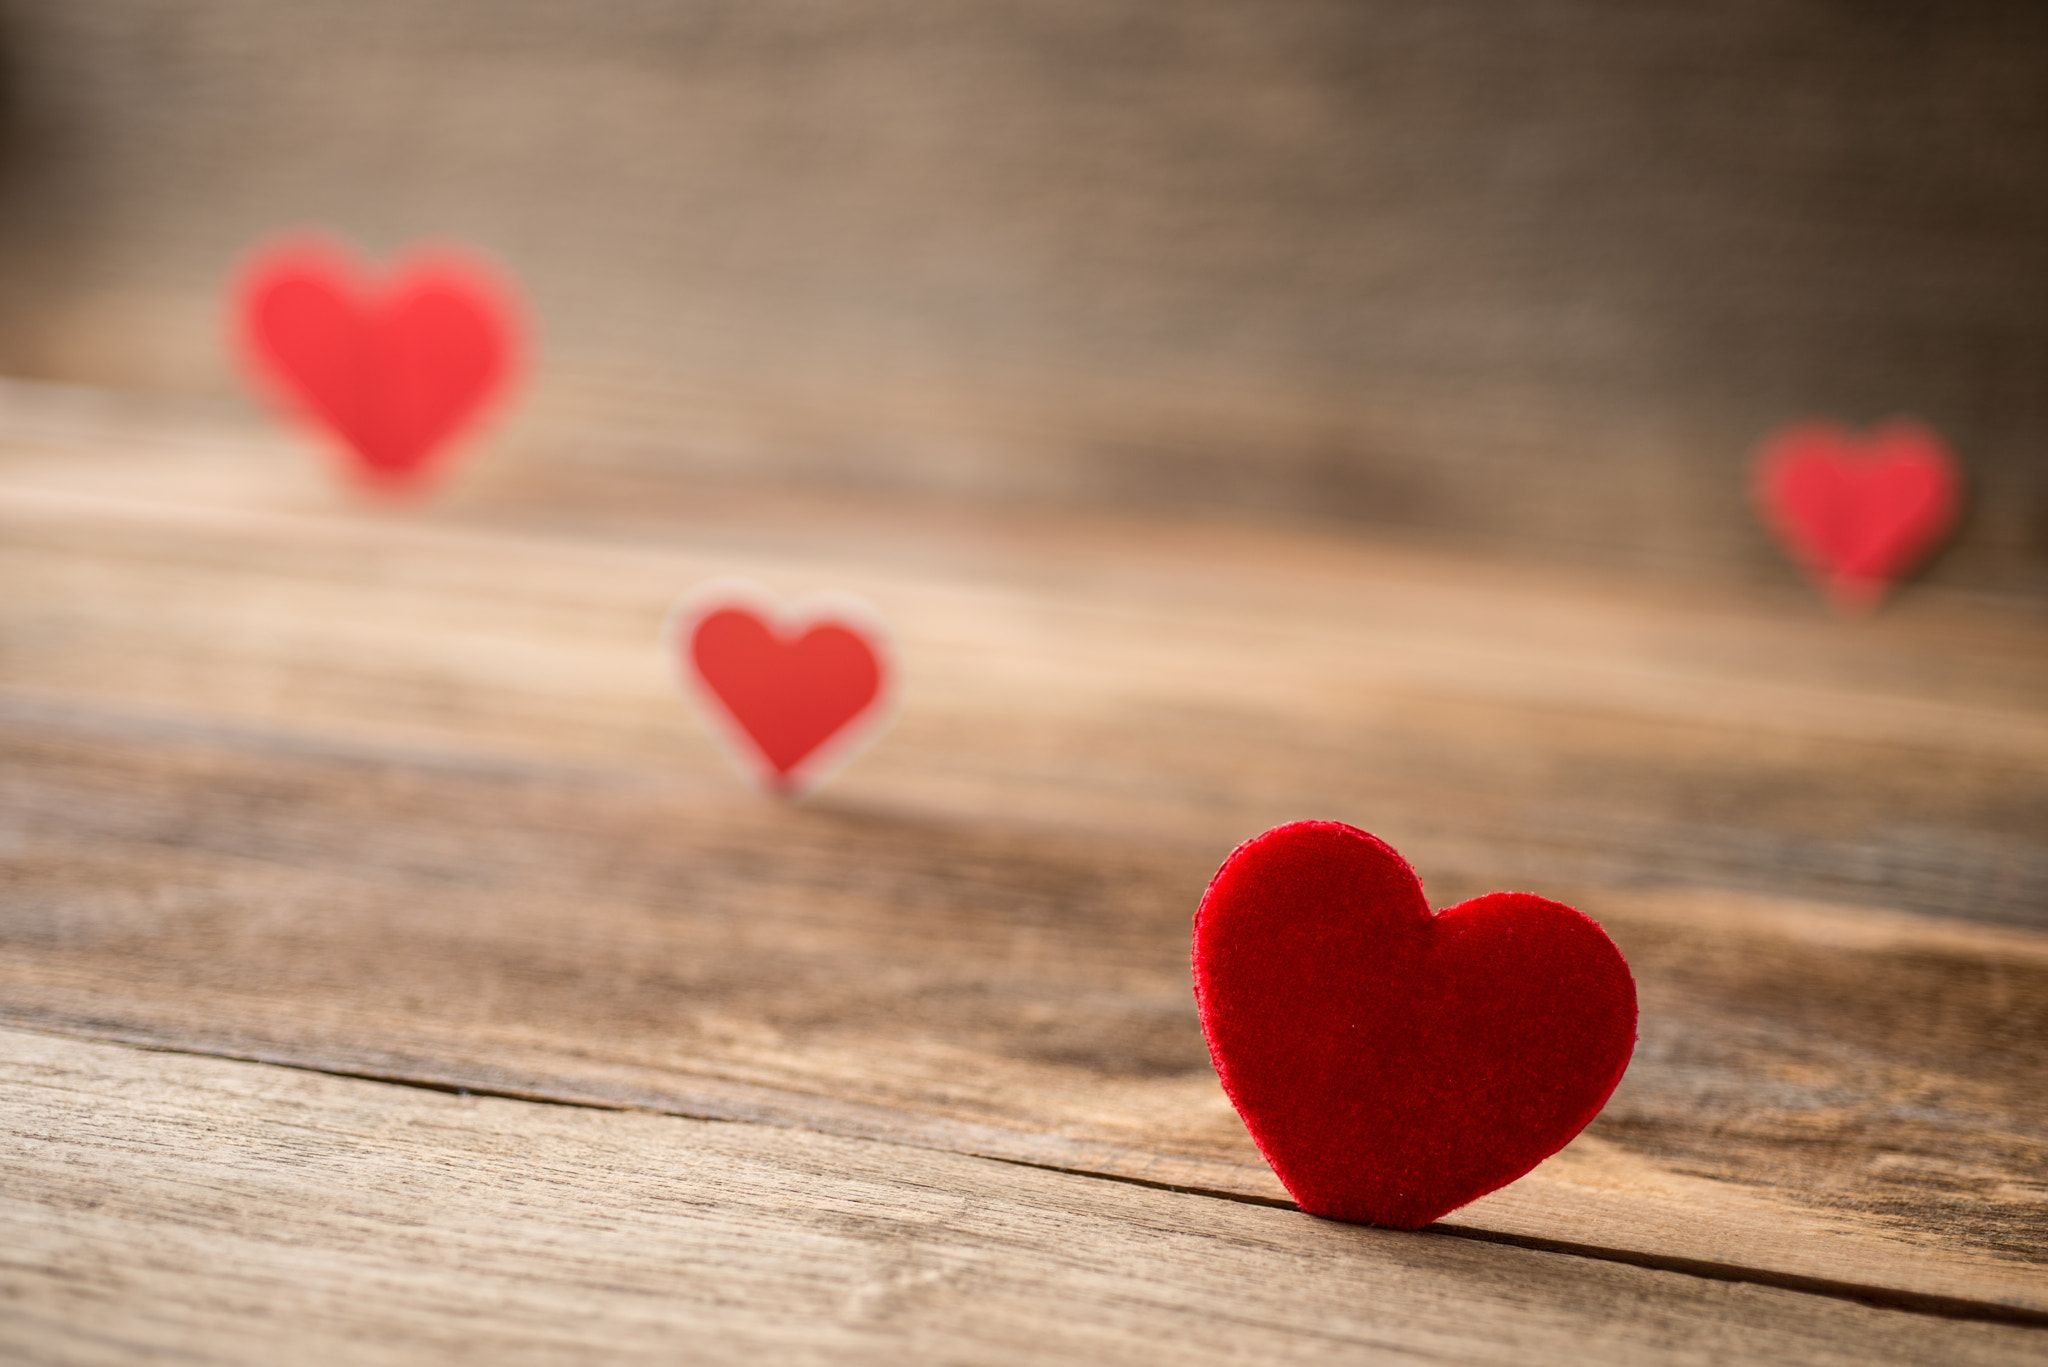 シンプルな愛の壁紙,心臓,赤,愛,バレンタイン・デー,心臓